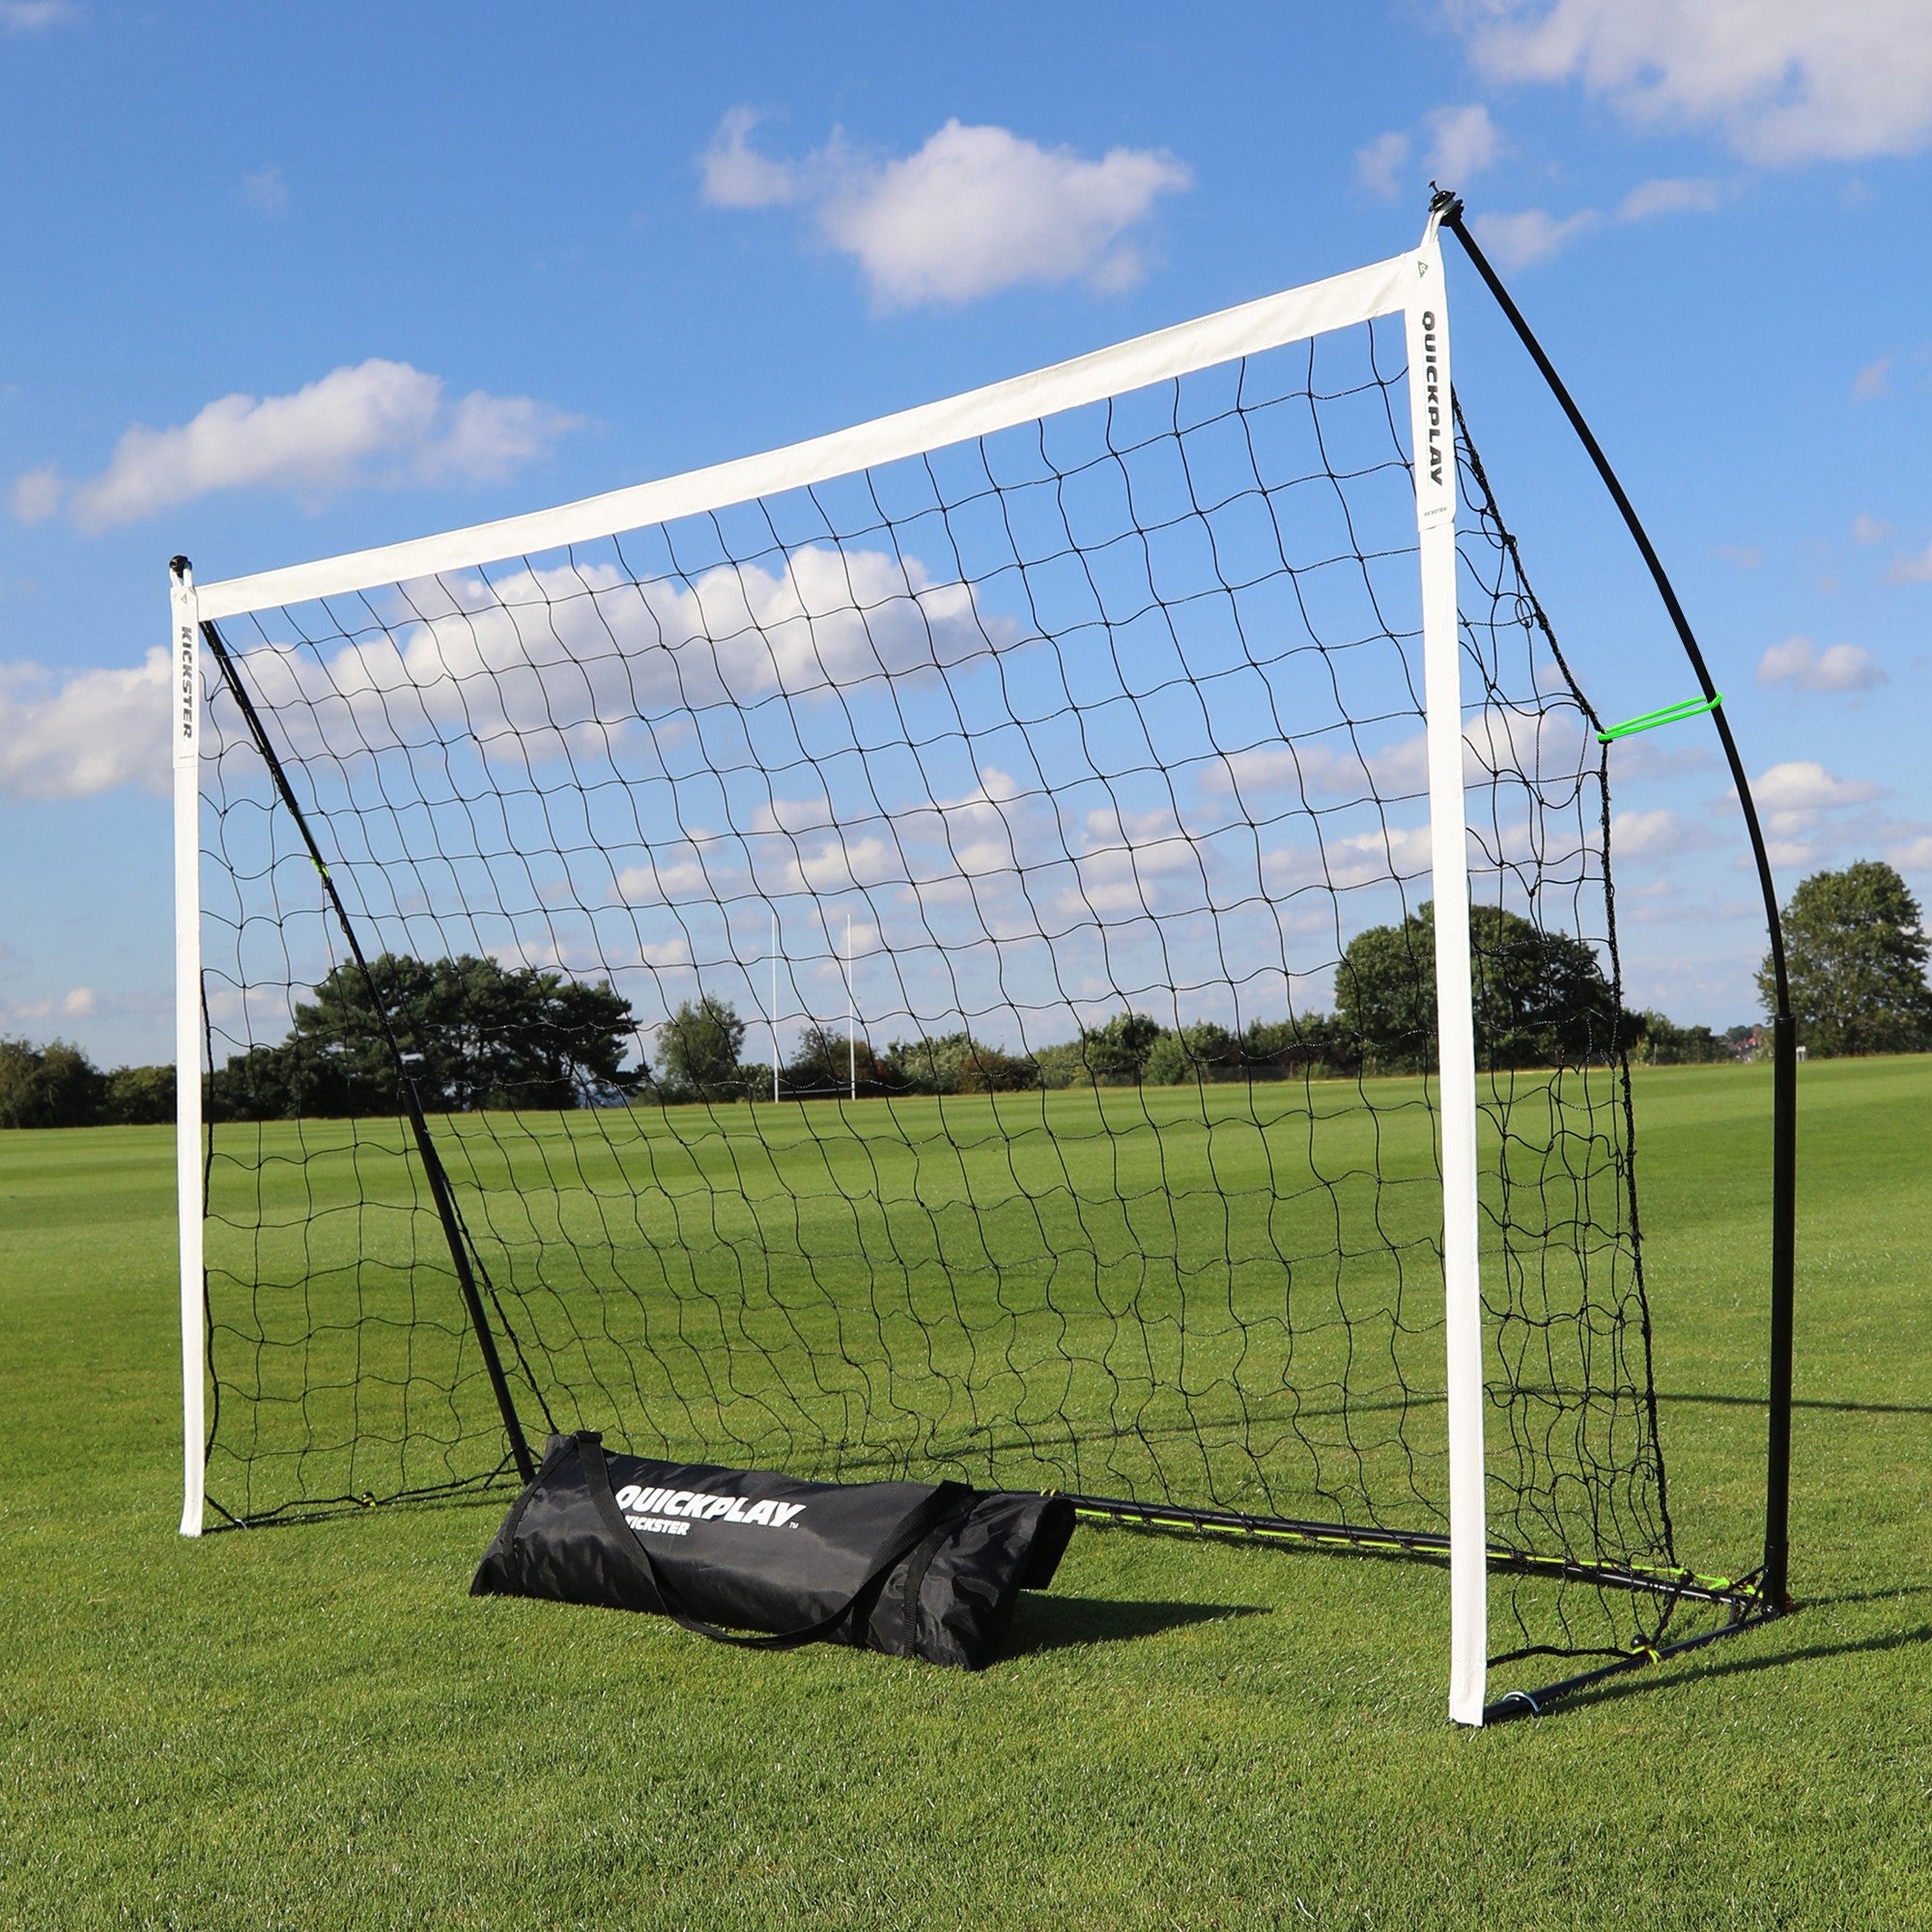 KICKSTER 8x5' Portable Small Football Goal | 2 Min setup